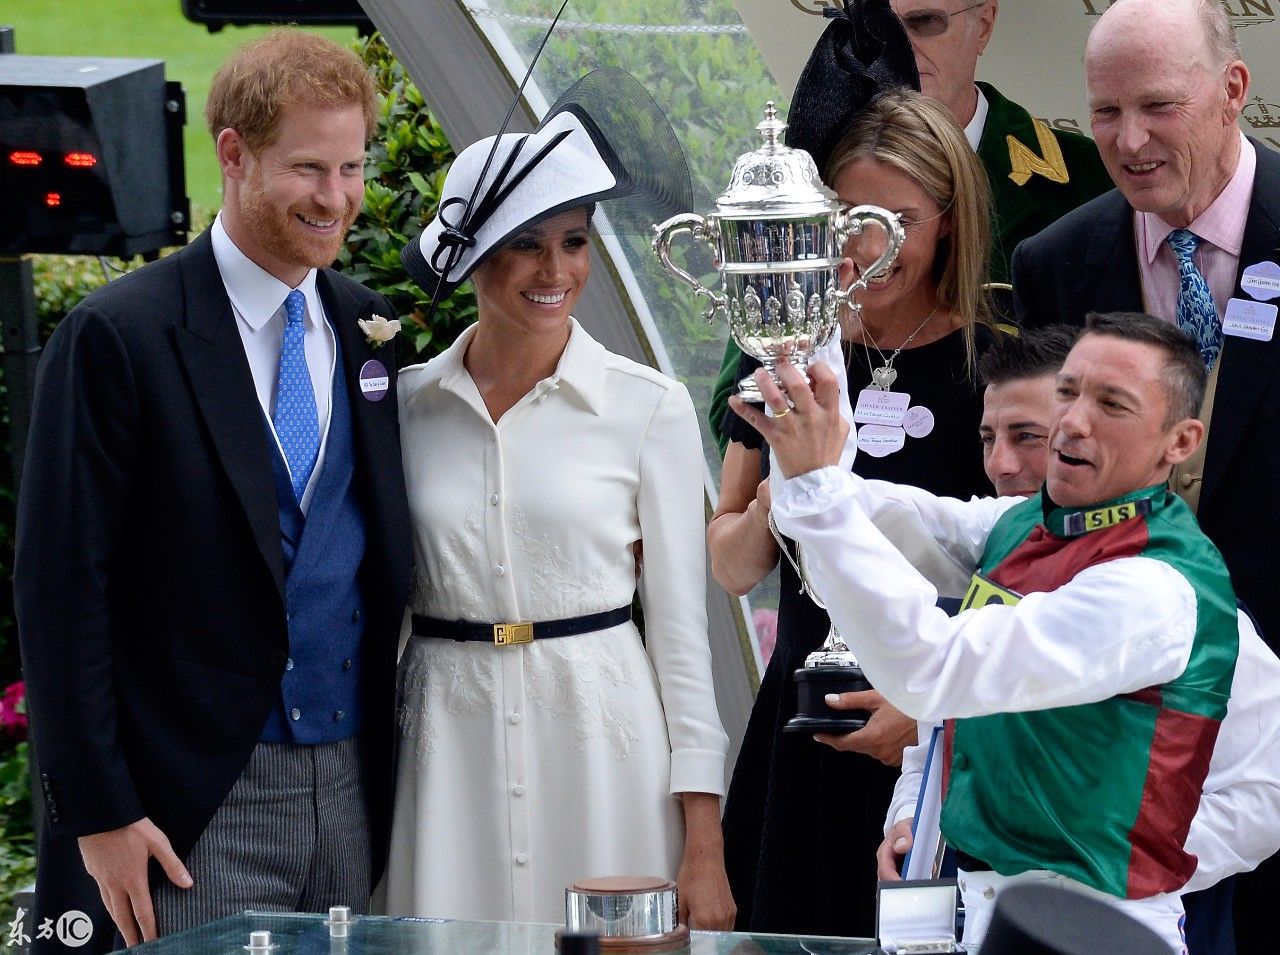 哈里王子和梅根王妃在皇家赛马赢得奖杯 网友:谁敢让他们输!